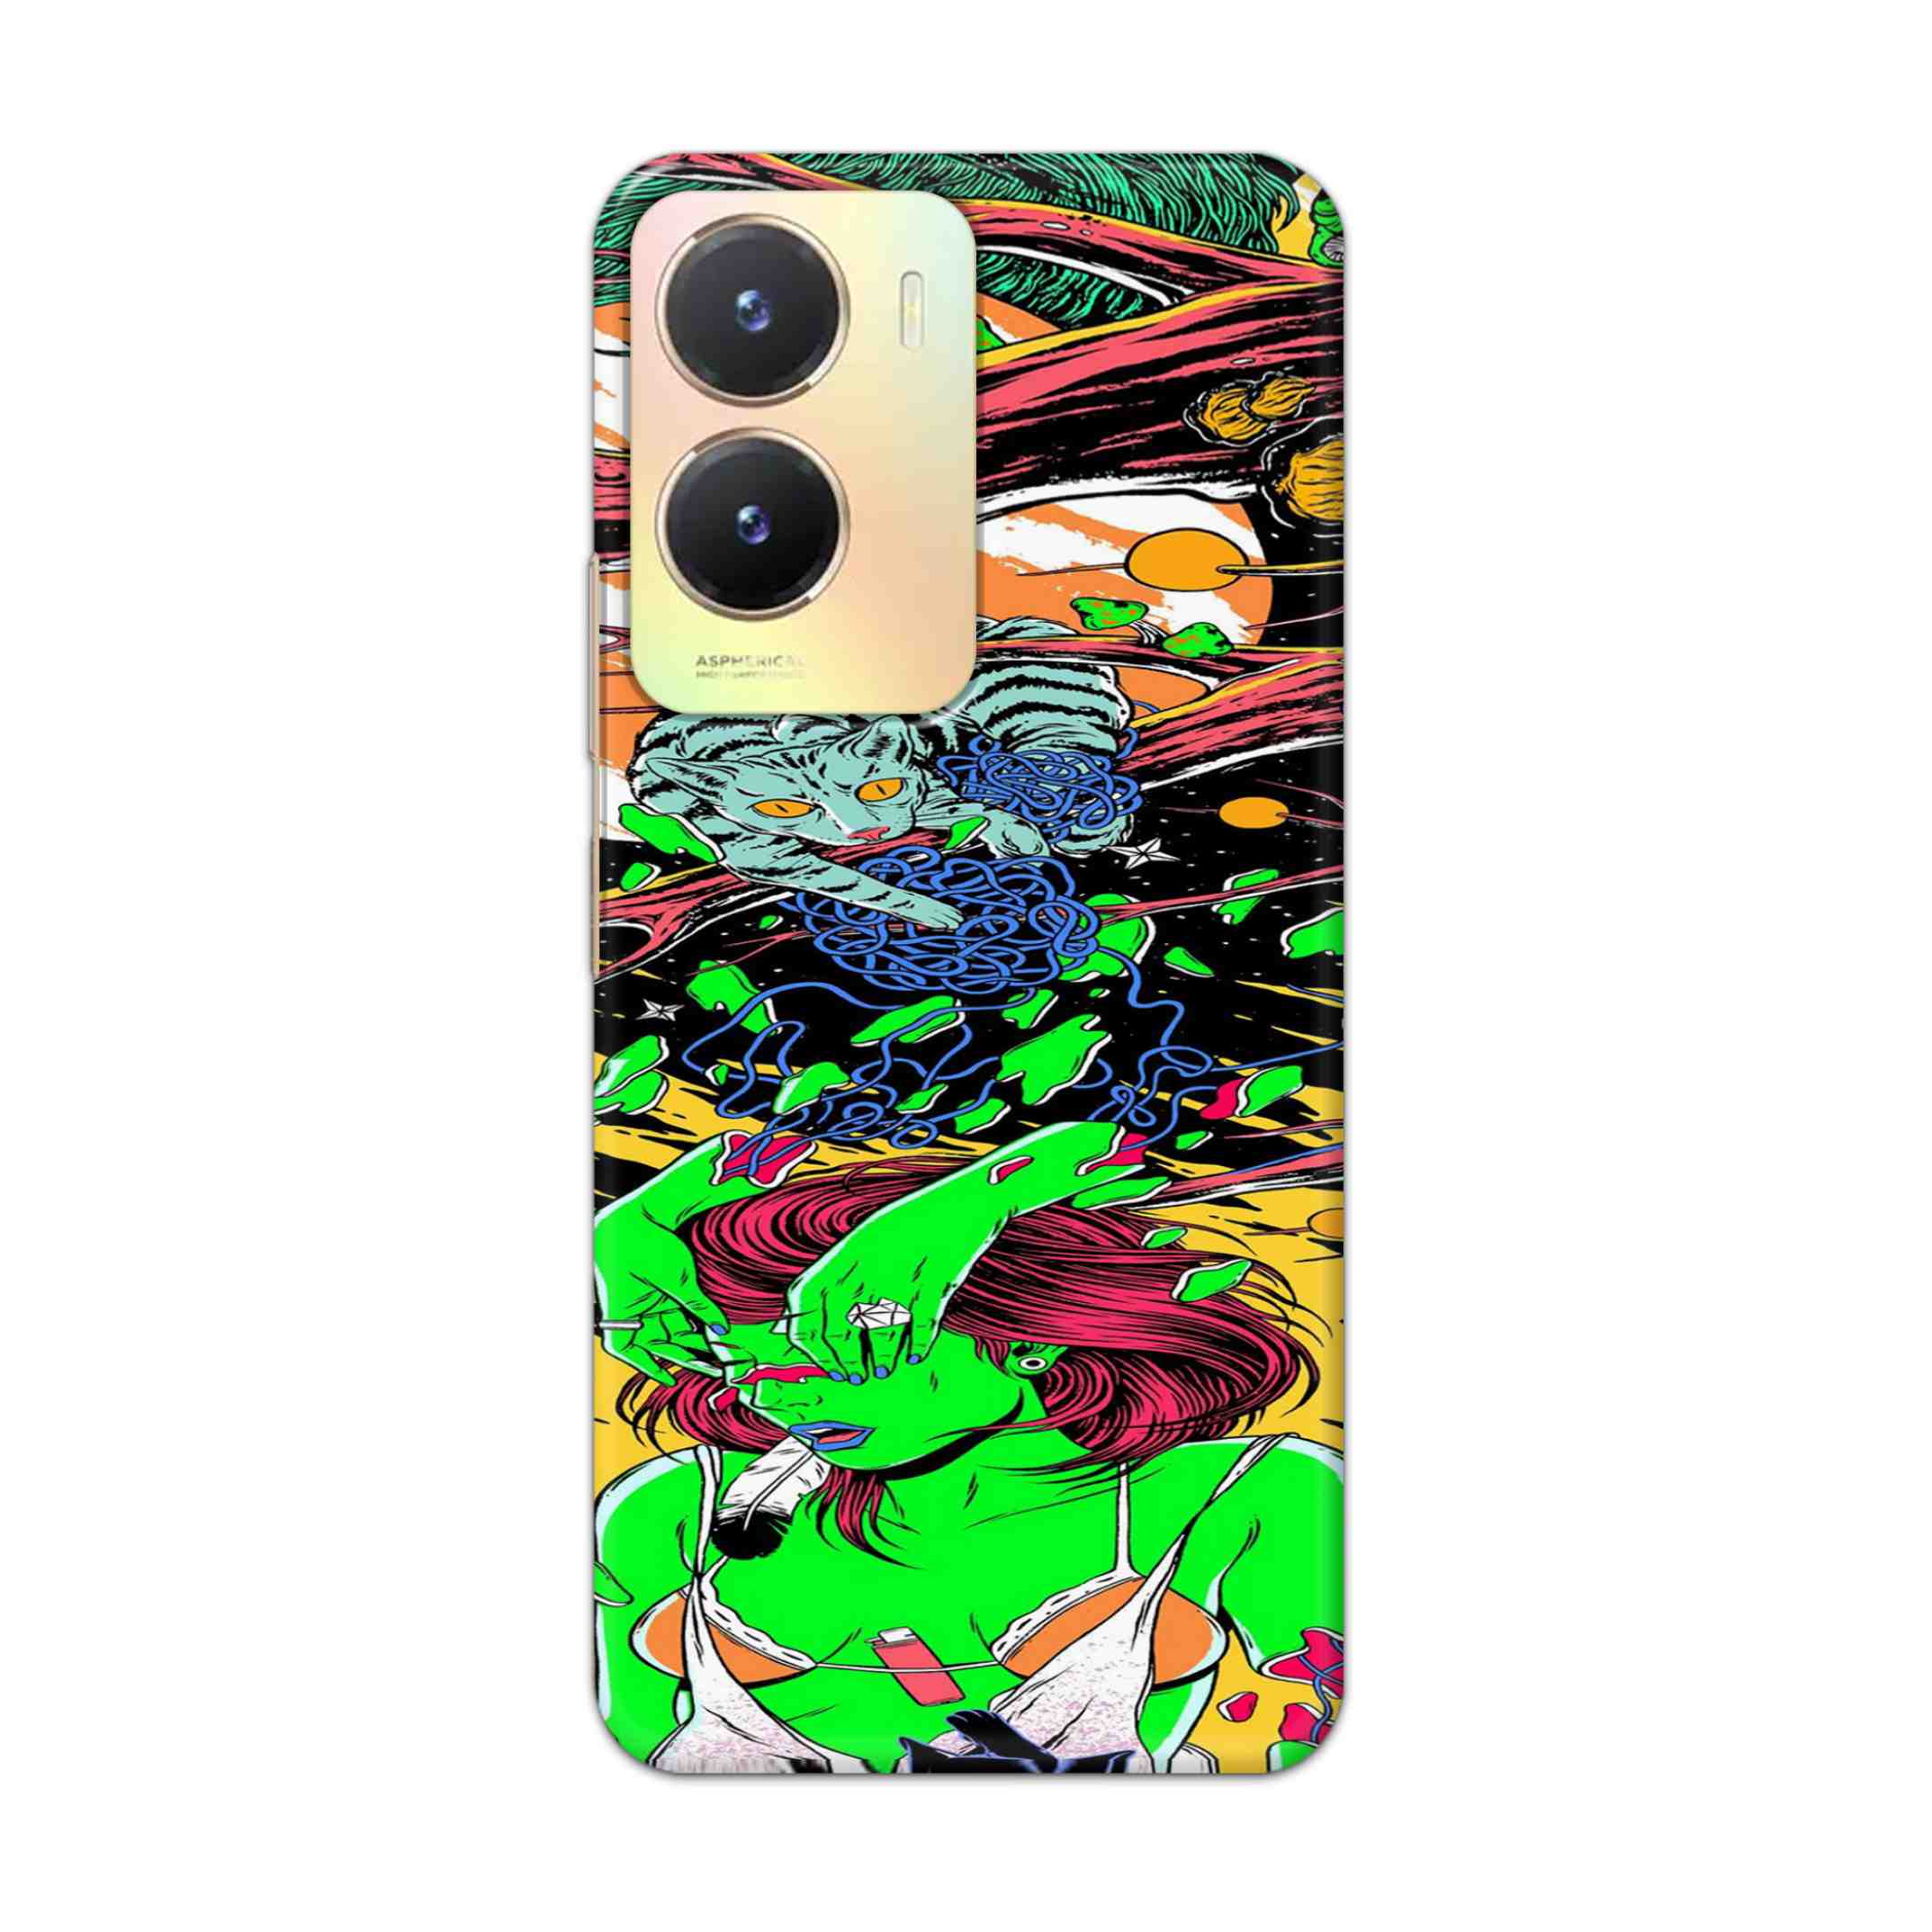 Buy Green Girl Art Hard Back Mobile Phone Case Cover For Vivo T2x Online